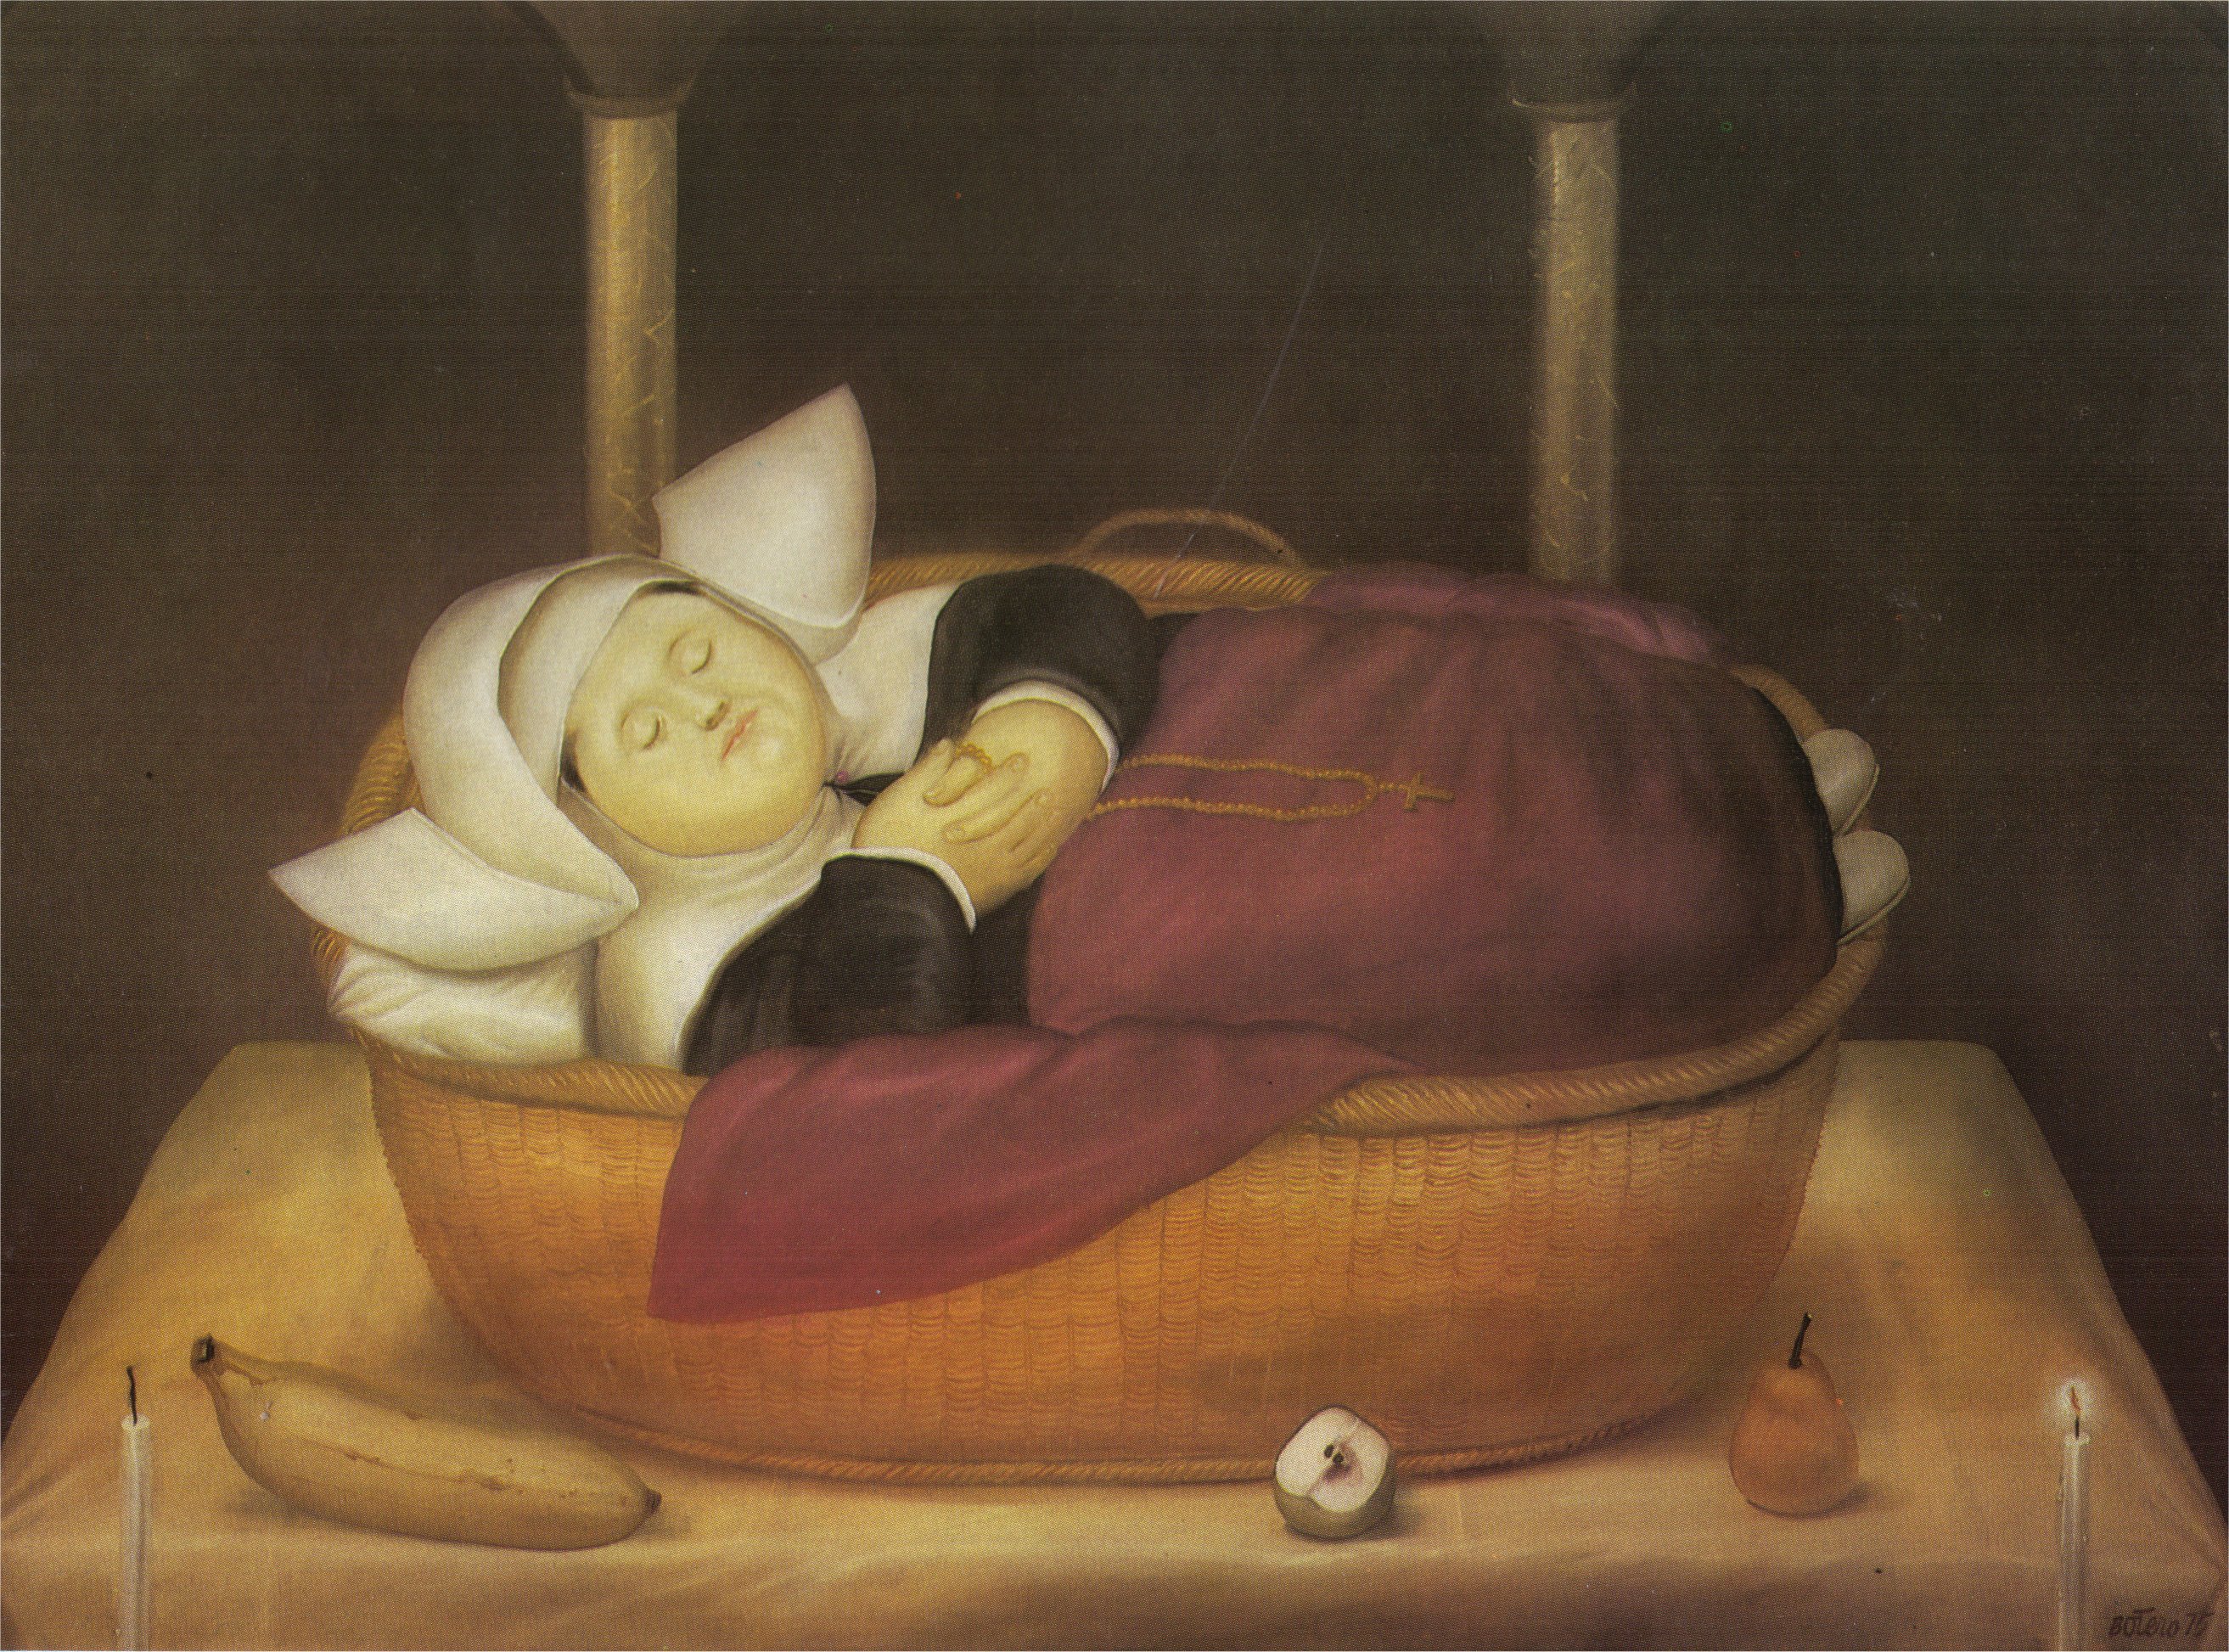 New-born Nun (1975).